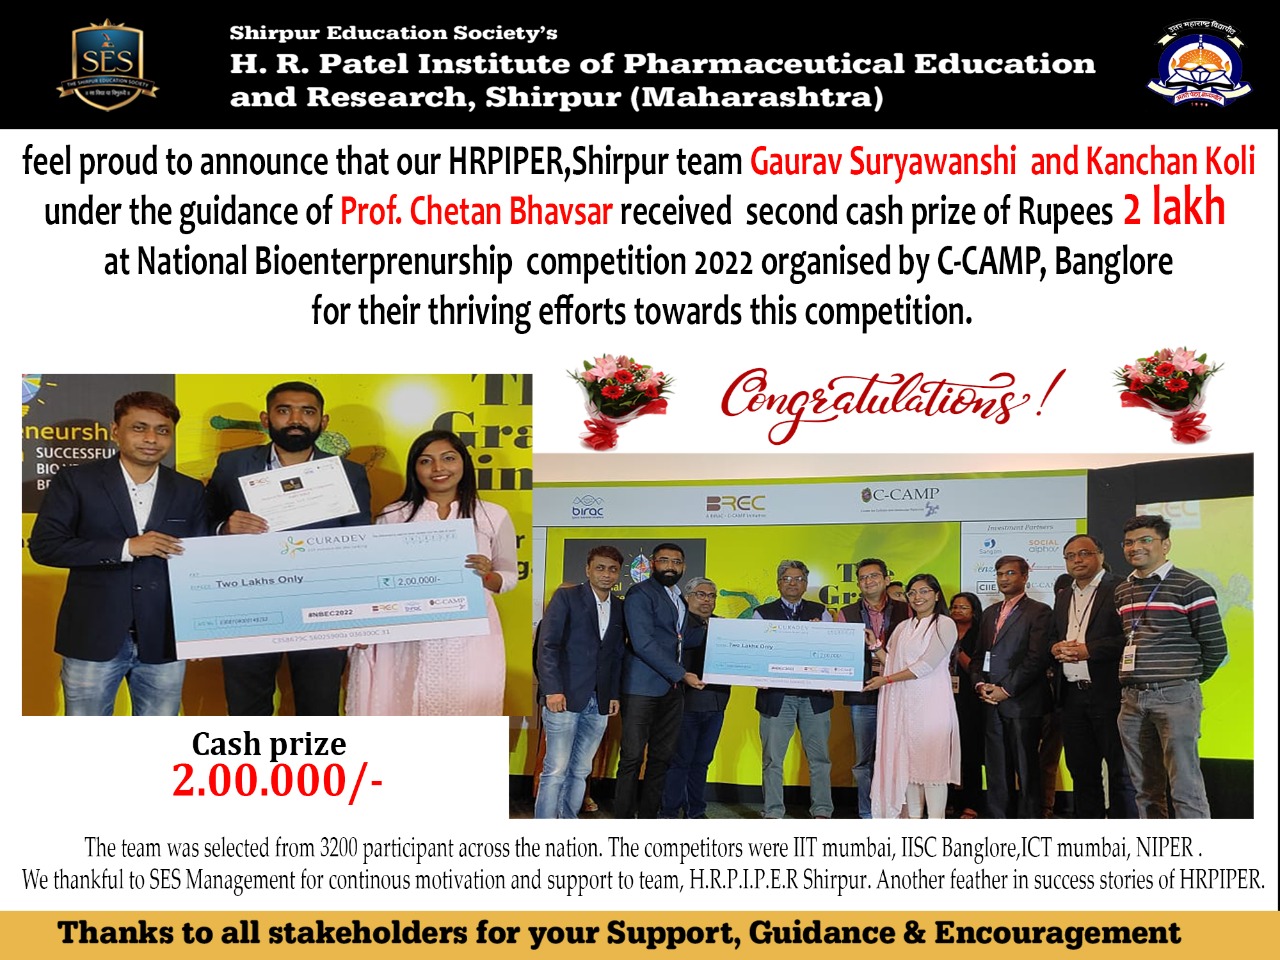 Gaurav Suryawanshi and Kanchan Koli received 2 Lakh cash prize